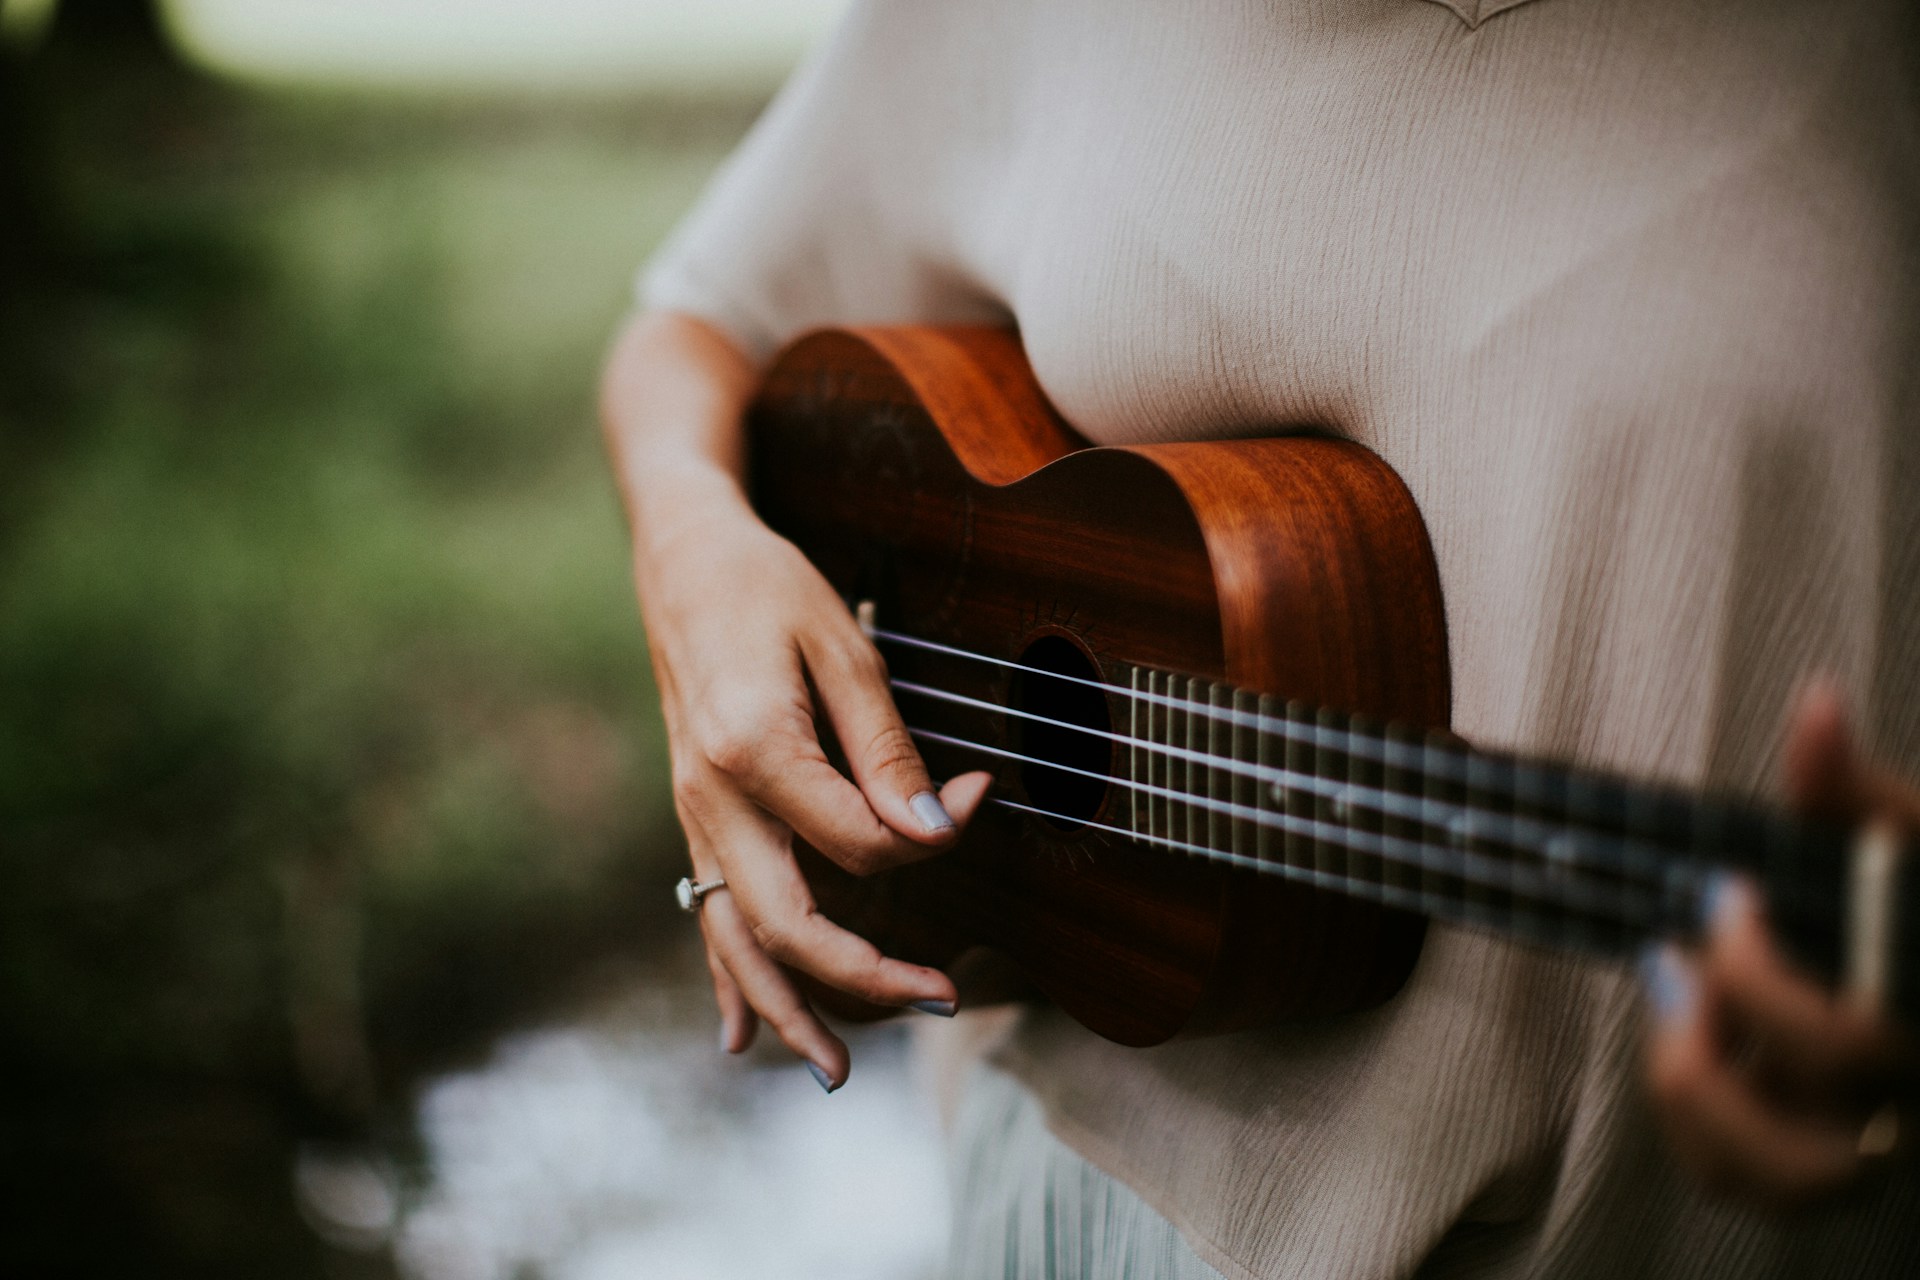 Lr at spille ukulele p 5 minutter!